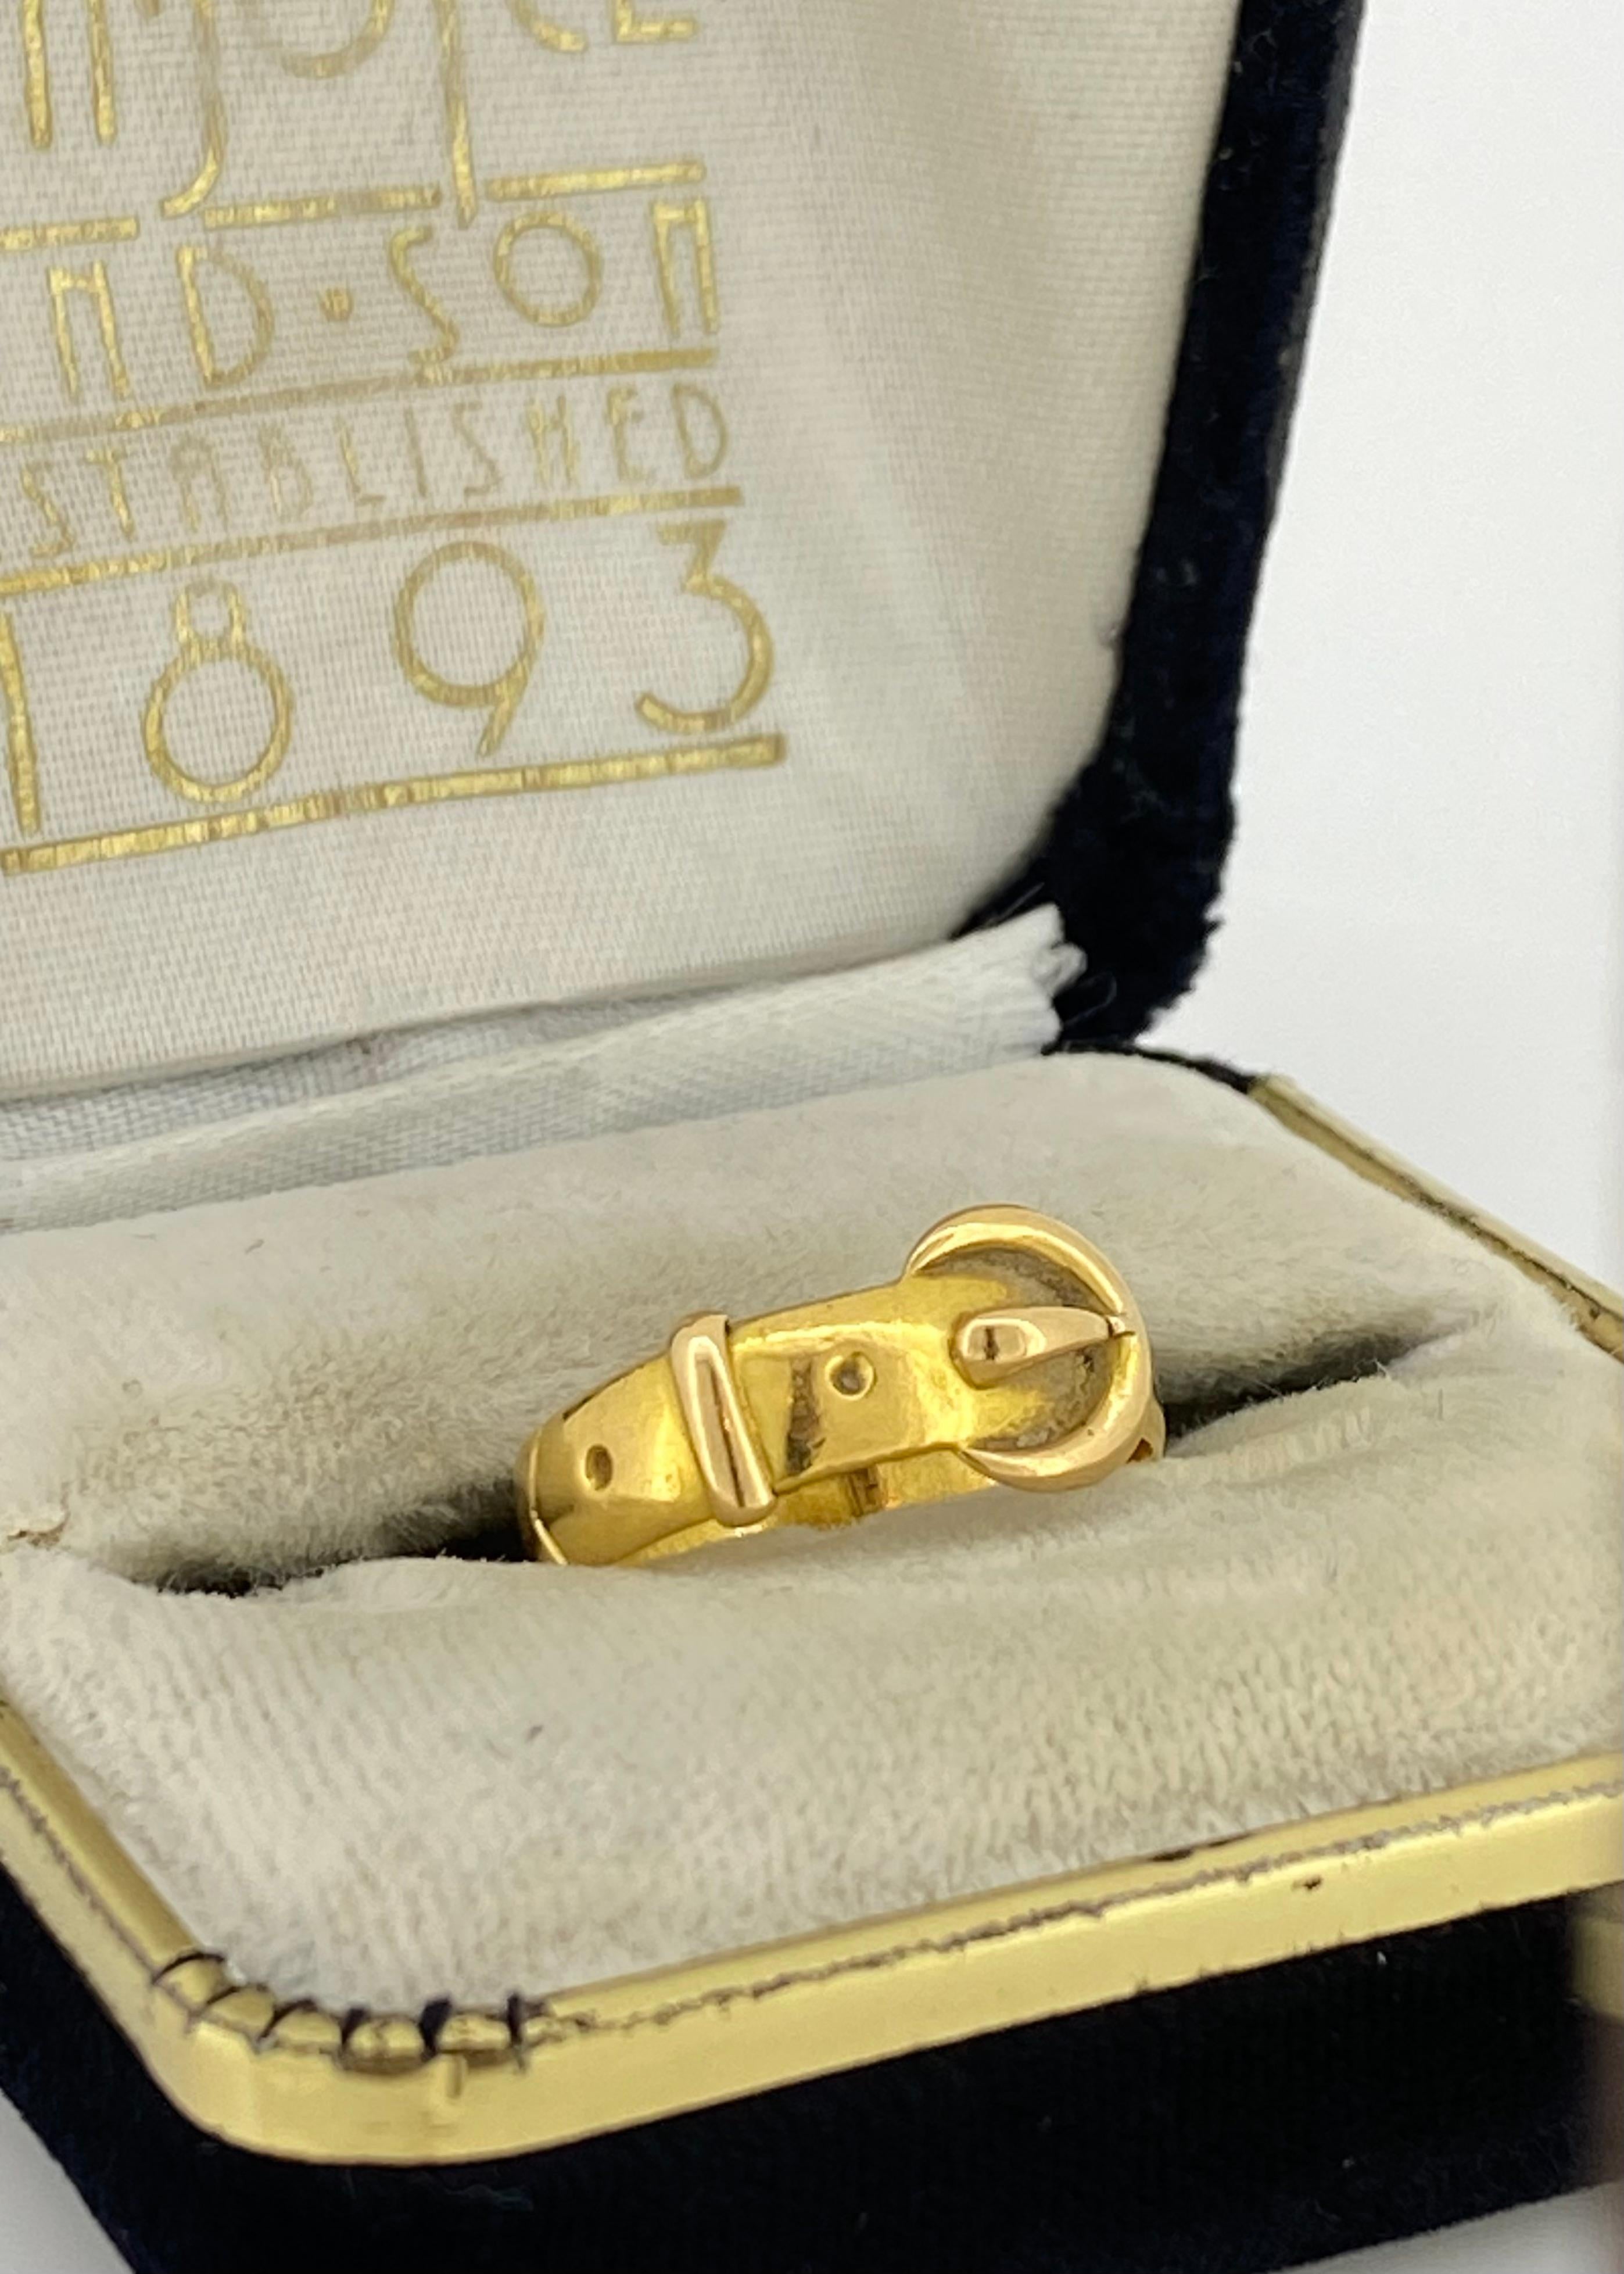 Fabriqué en or jaune 22K, 
L'anneau présente une forme complexe de ceinture/boucle. 
(incroyablement détaillé), 
avec une largeur de bande de 10 mm

La pièce date de la fin de l'époque victorienne, 
pourtant il est en très bon état  

Symbolisant